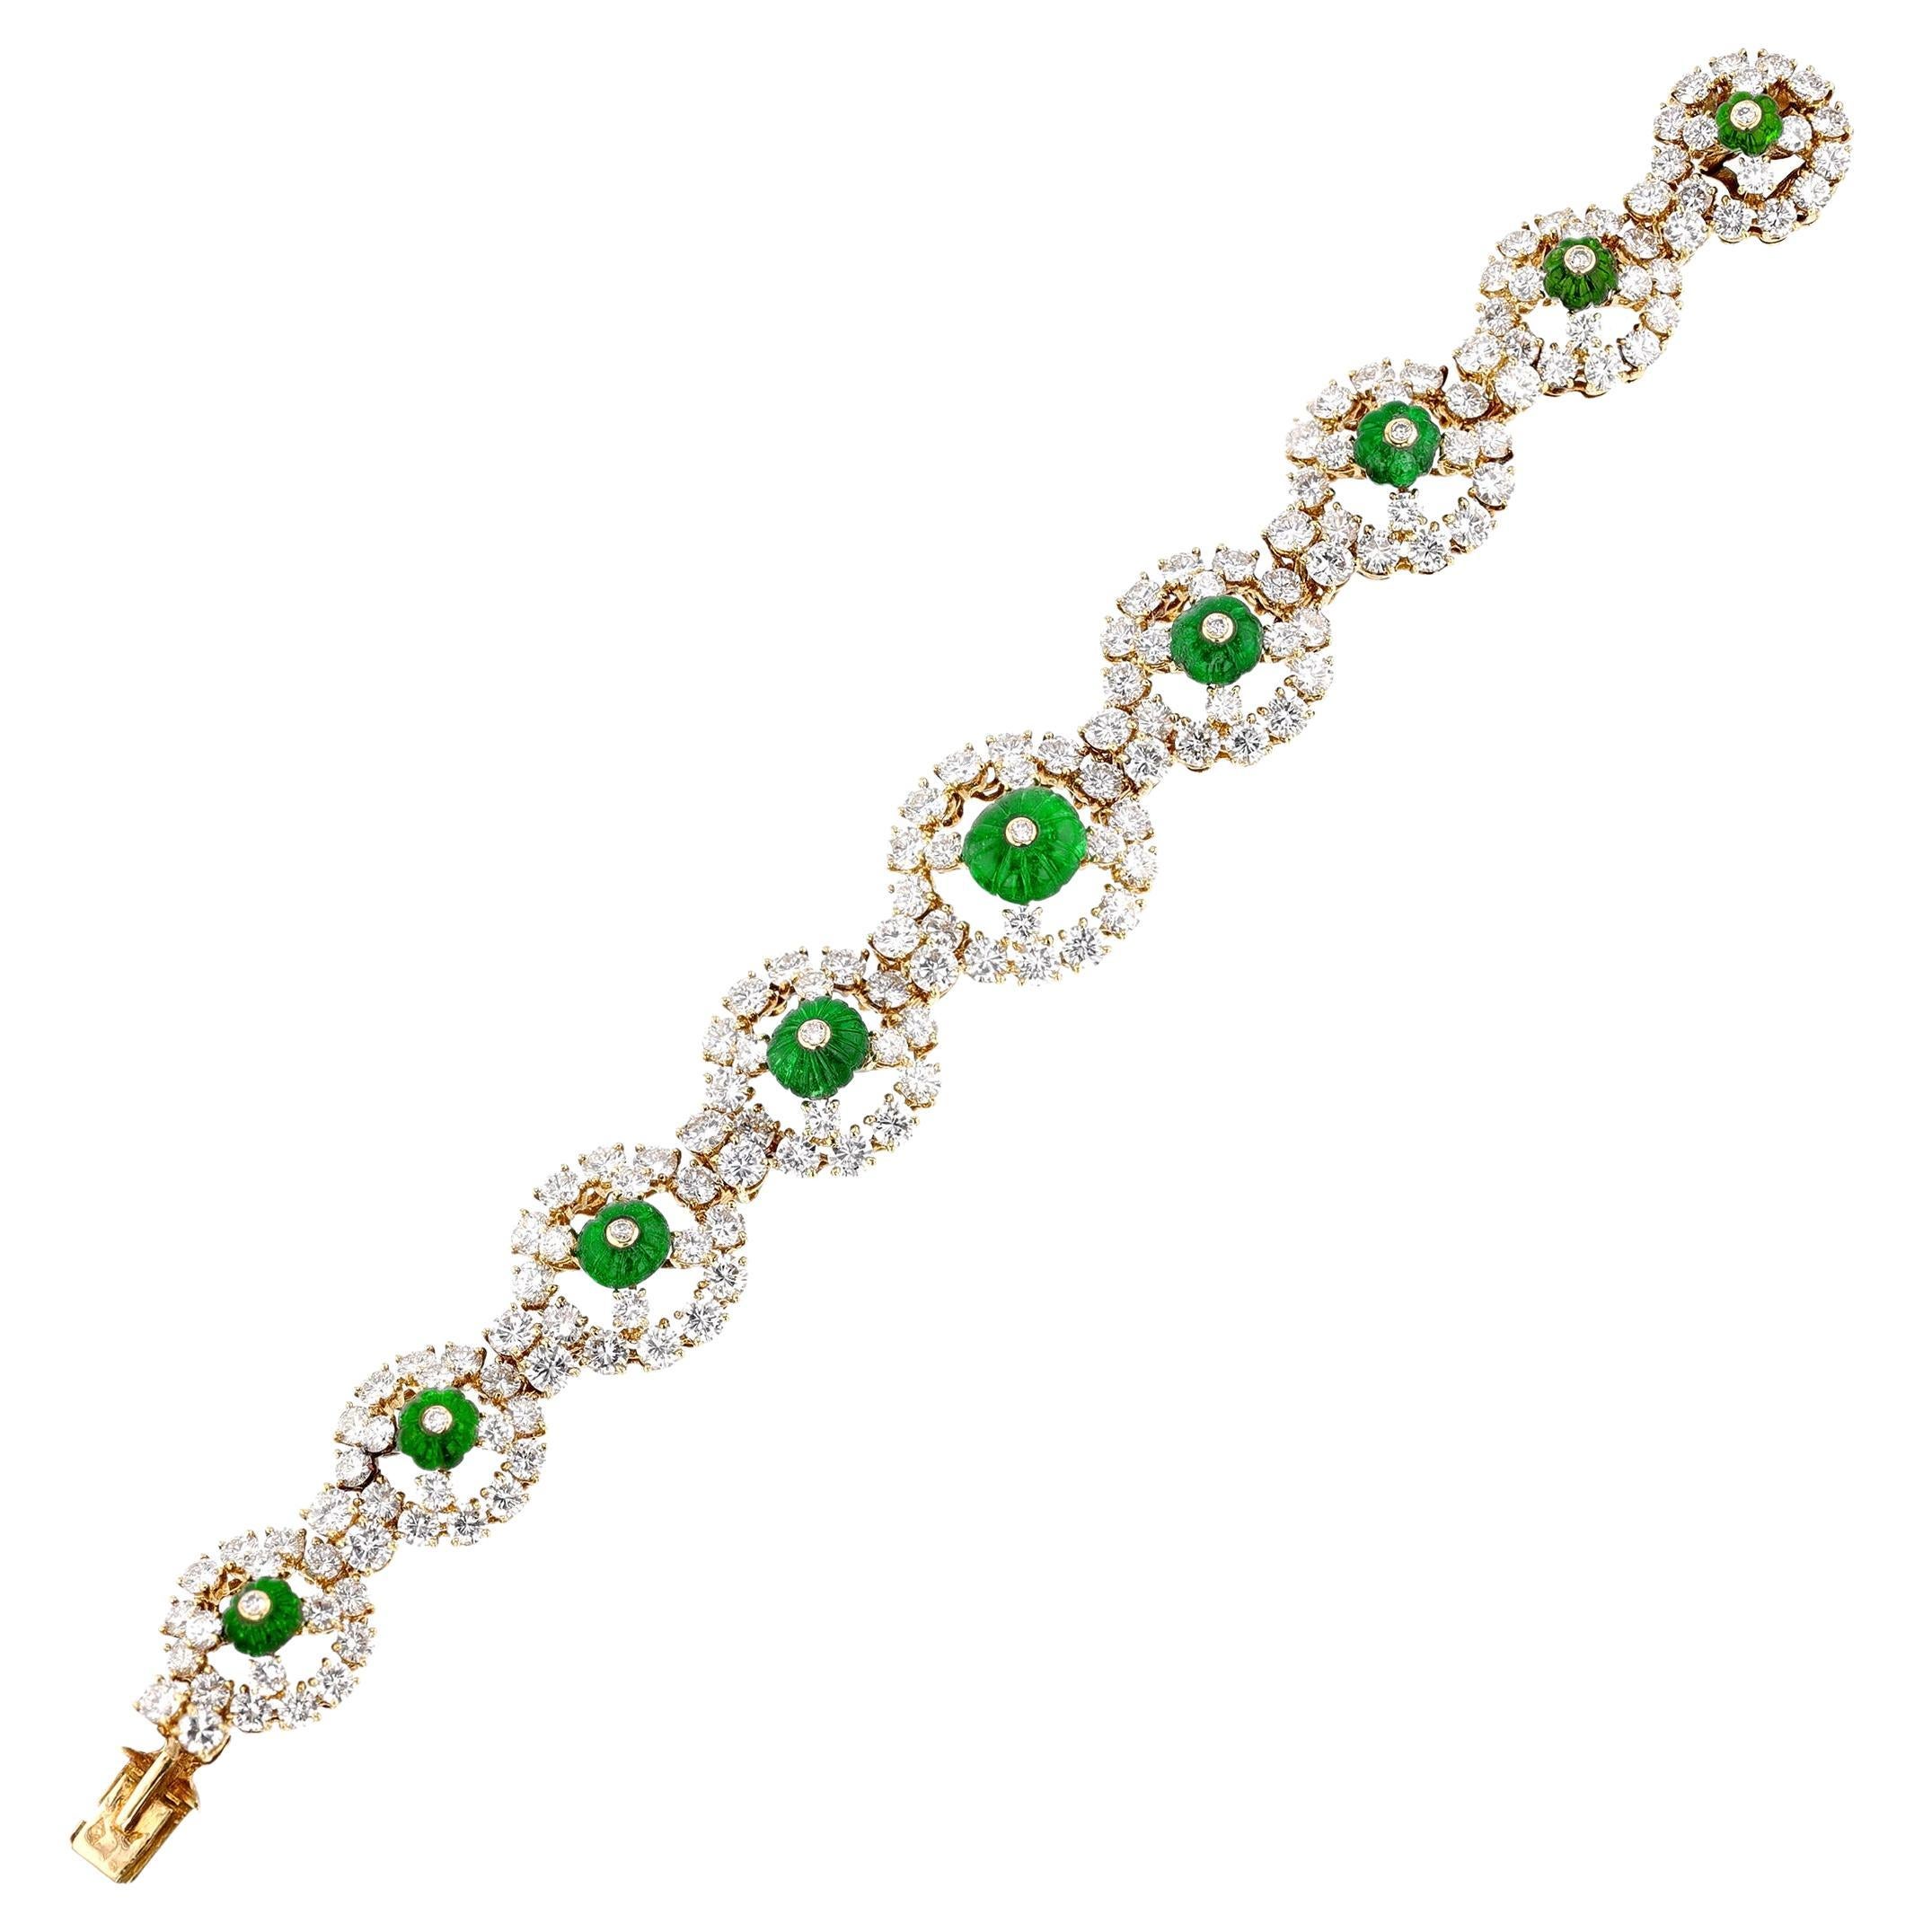 Alexandre Reza Carved Emerald and Diamond Bracelet, 18k 